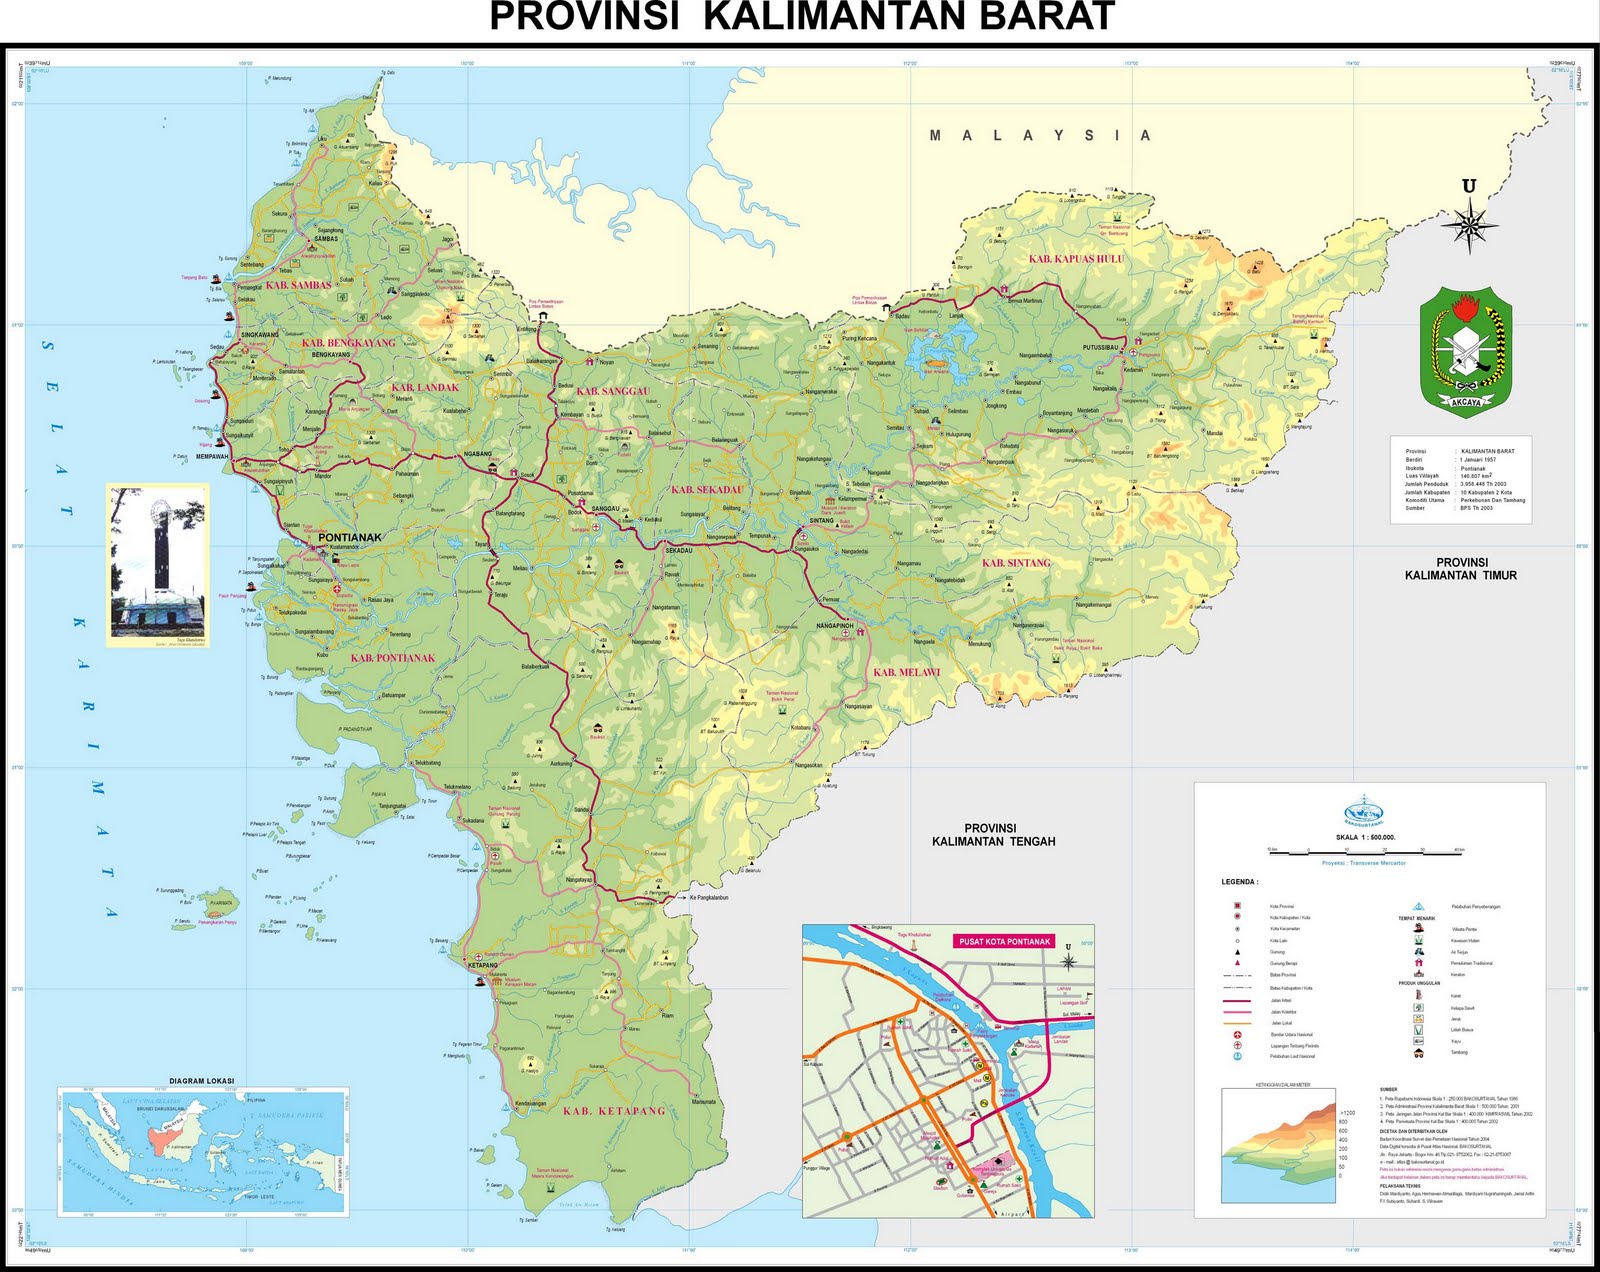 Peta Provinsi Kalimantan Barat (Kalbar)